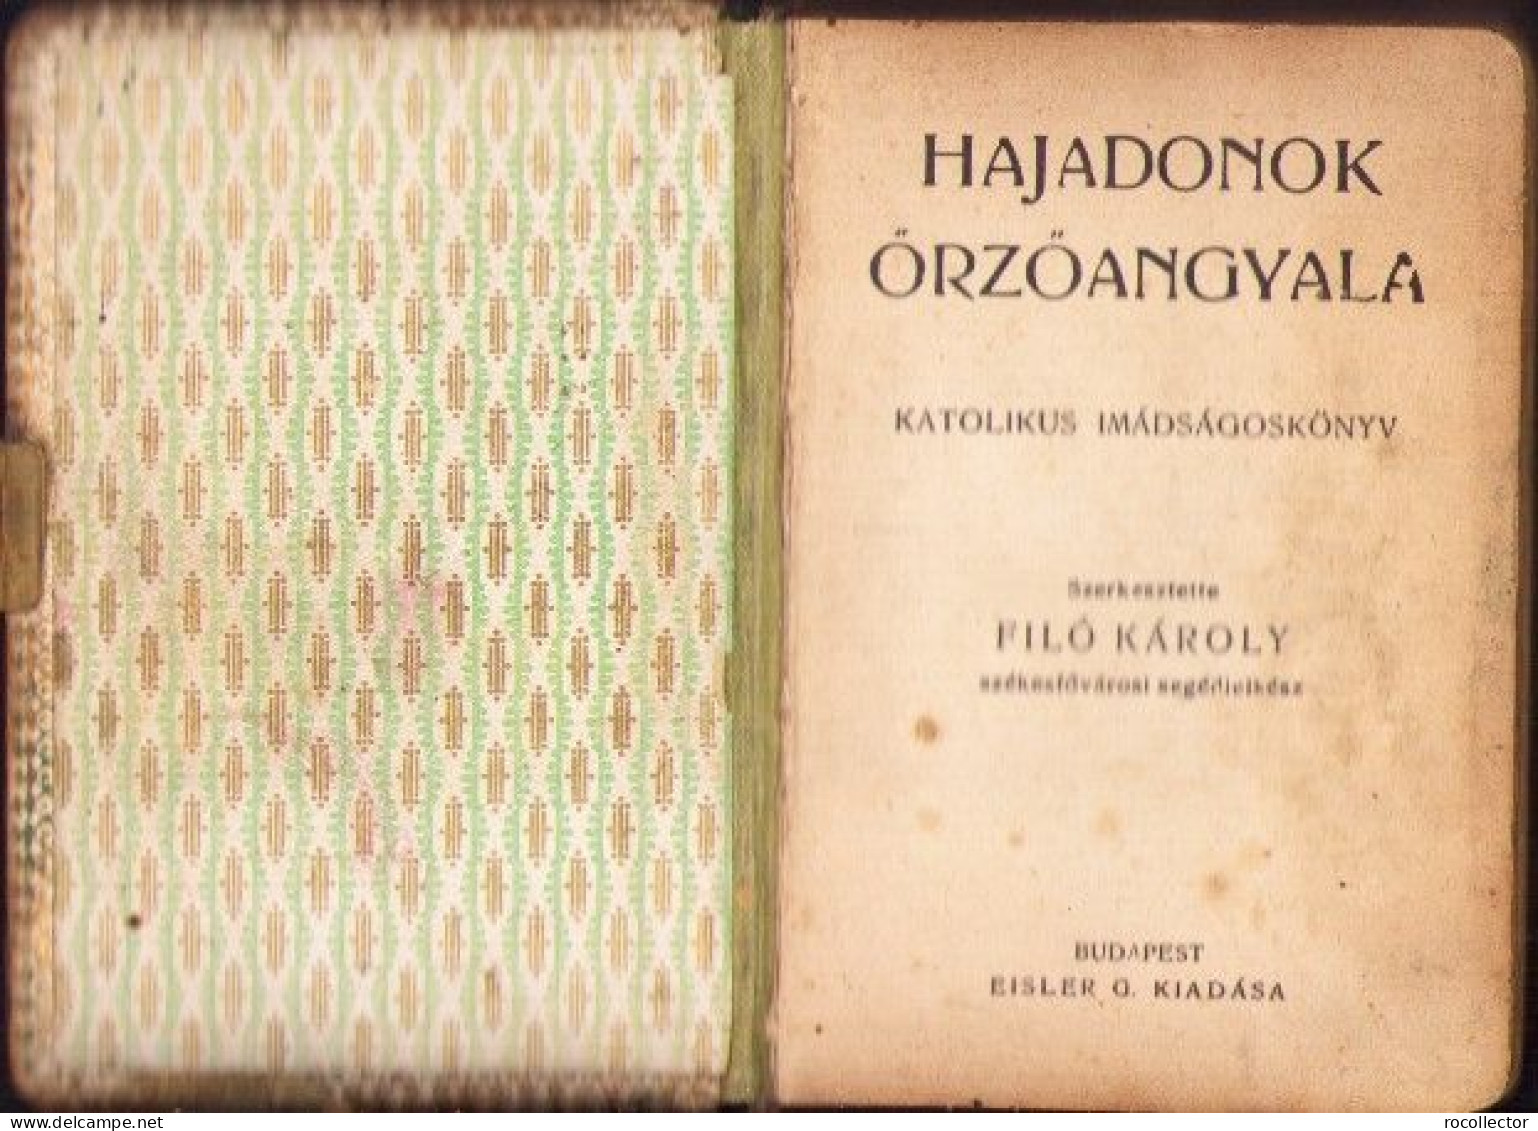 Hajadonok őrzőangyala Katolikus Imádságoskönyv 1913 Filó Károly 691SPN - Alte Bücher